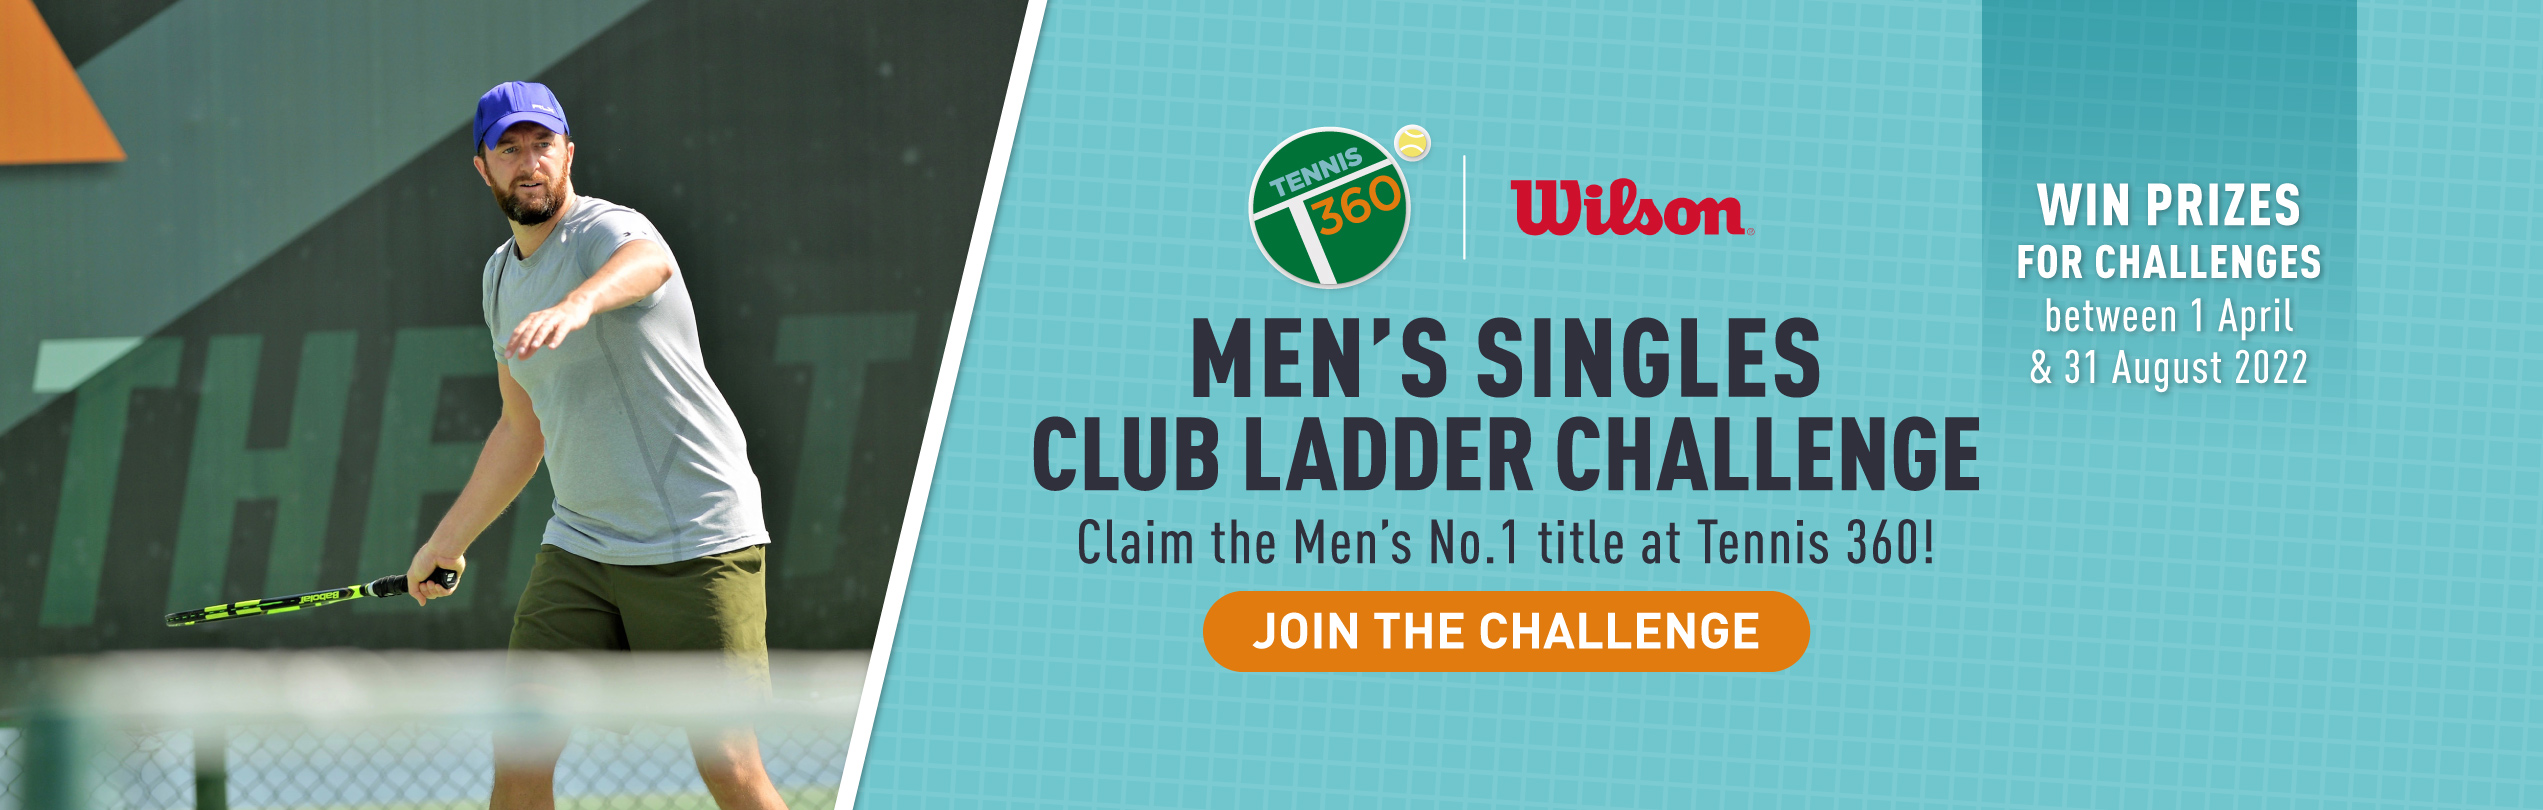 club ladder challenge